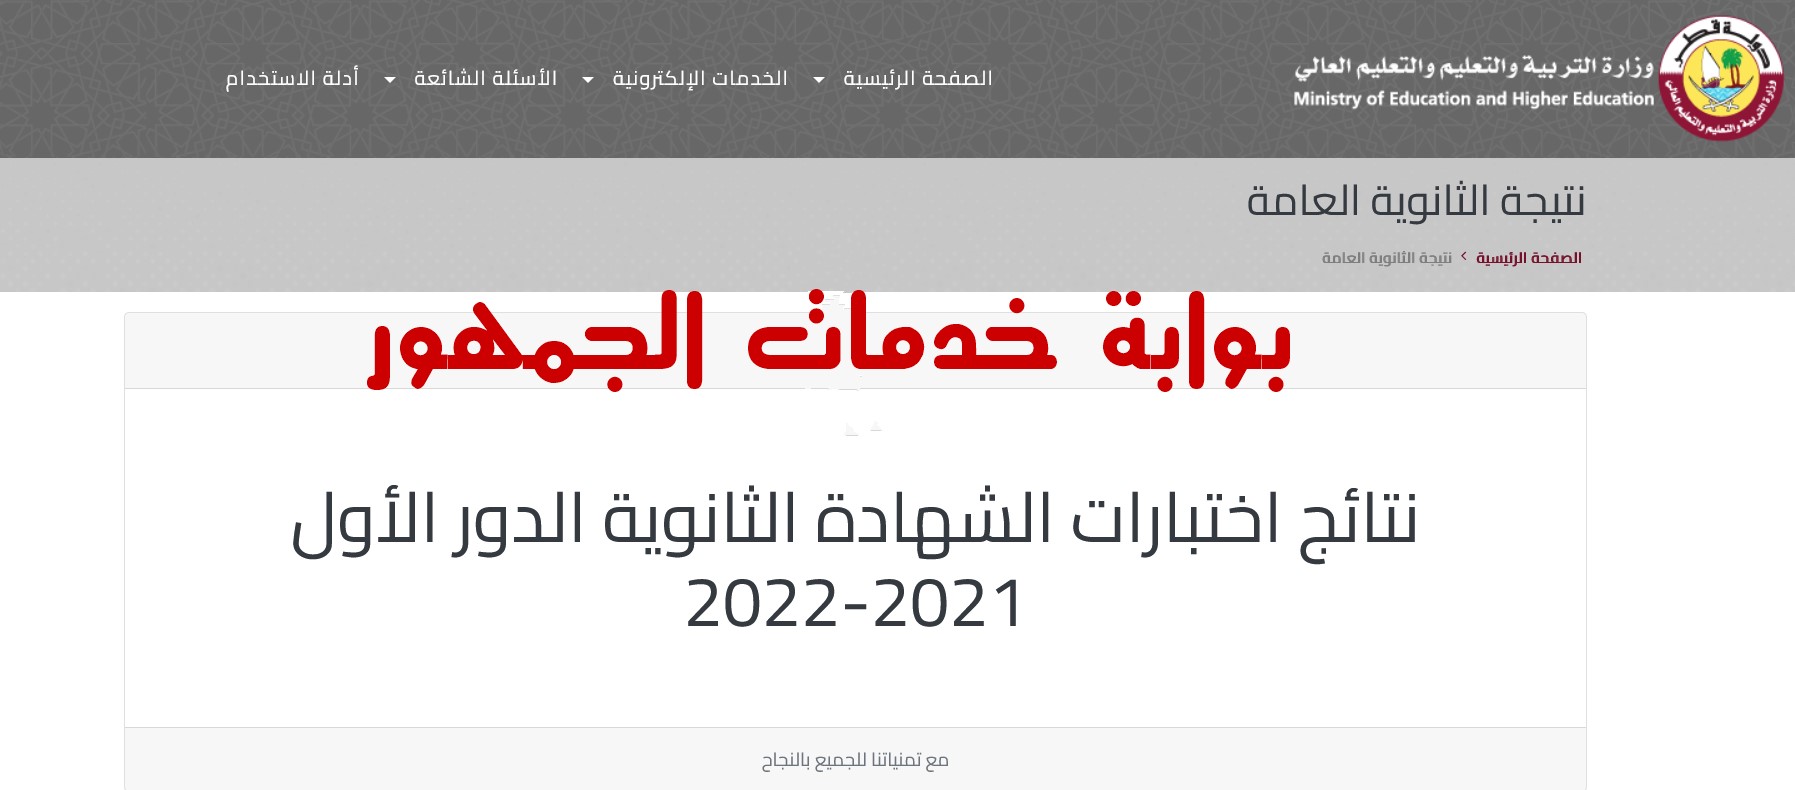 نتيجة الثانوية العامة 2022 قطر